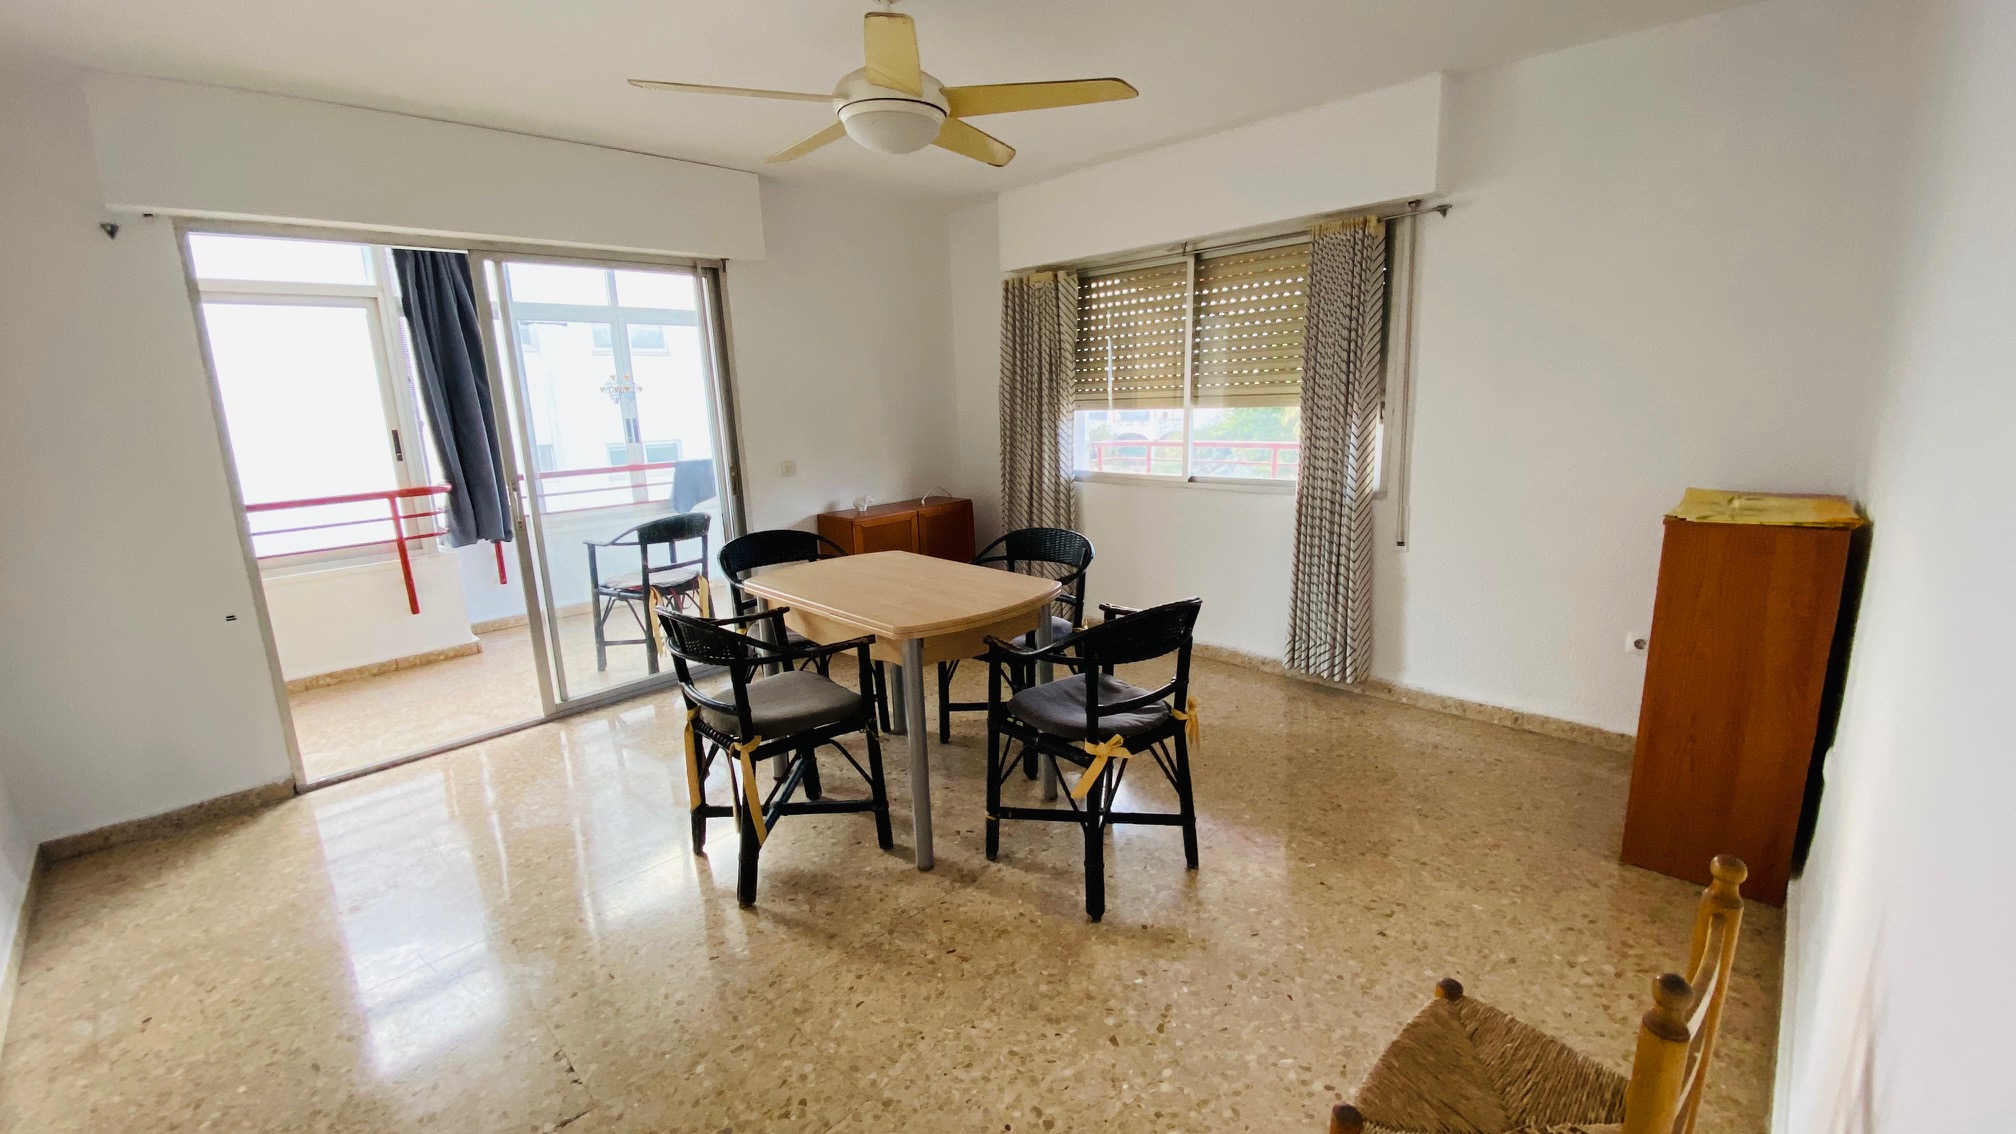 Appartement in Puerto de Altea: Woon in een gezellige omgeving